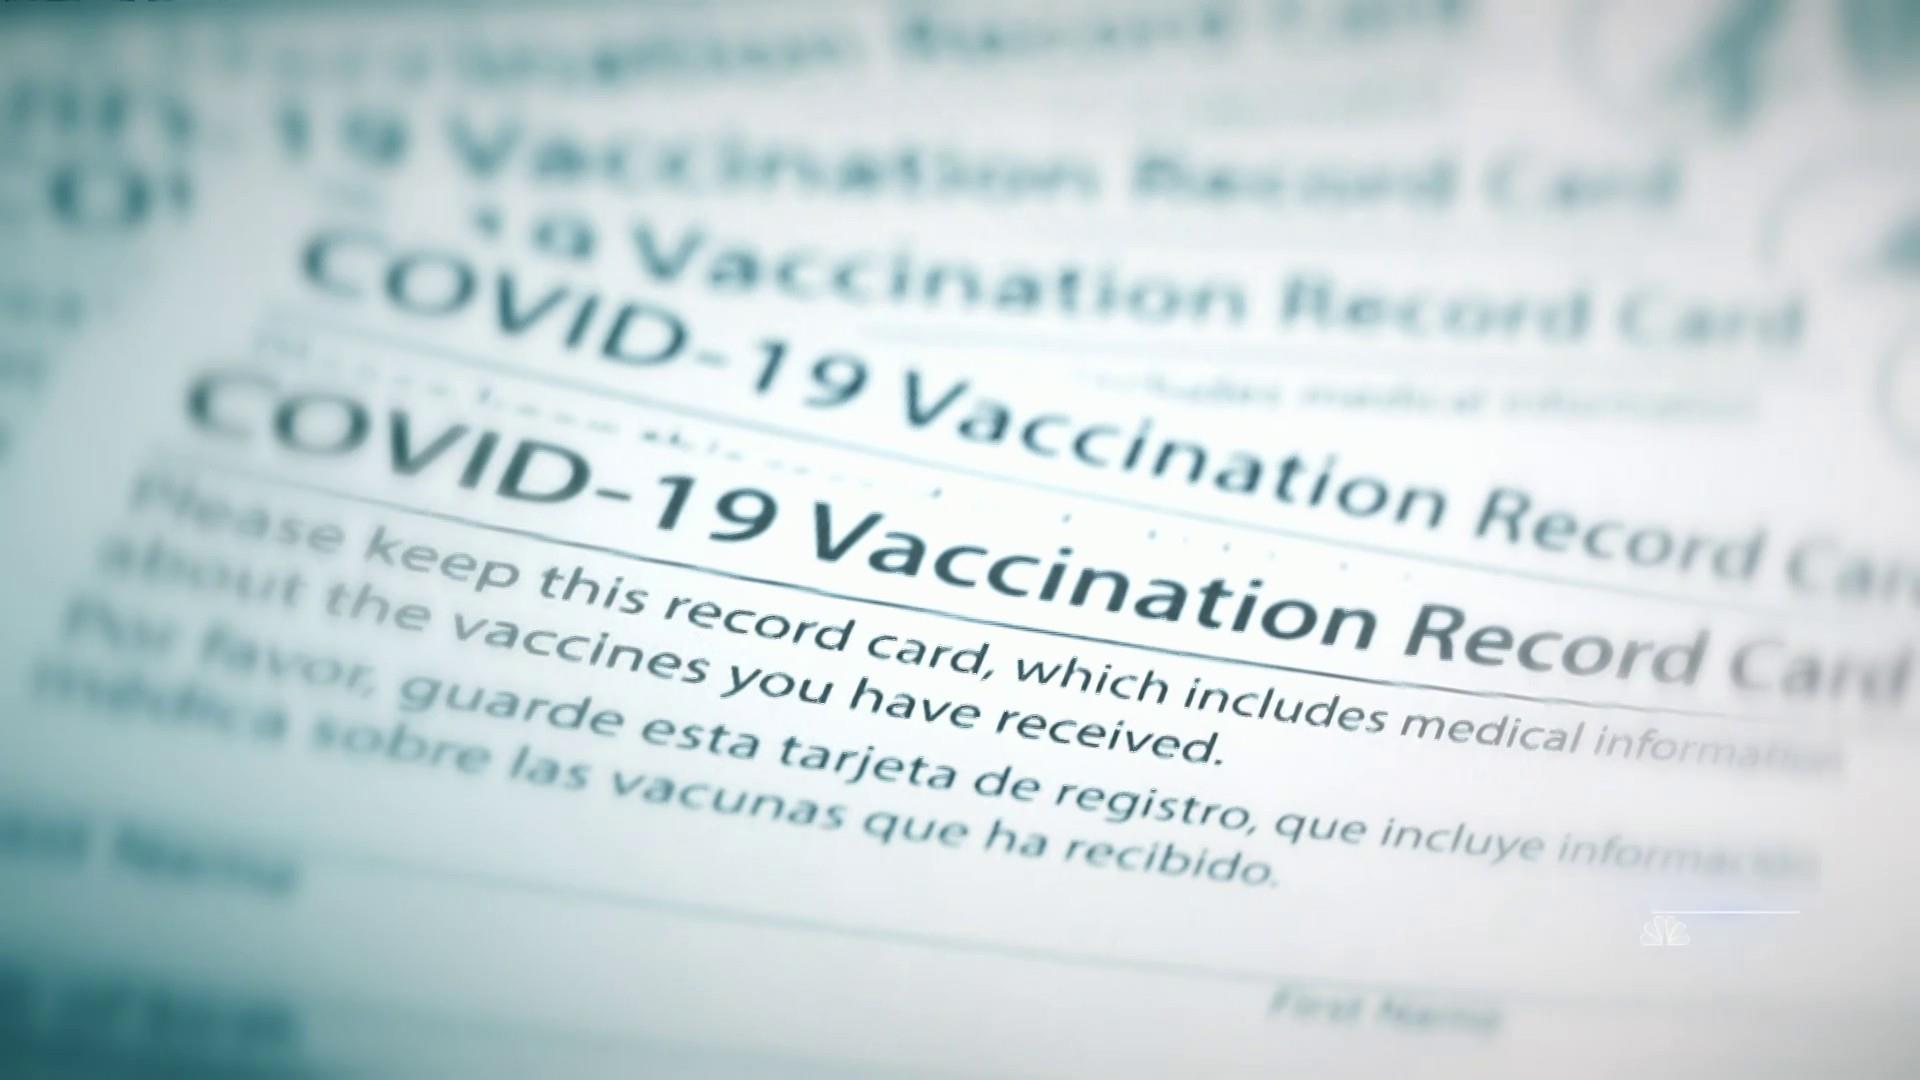 DST COVID-19 Vaccination Record Case